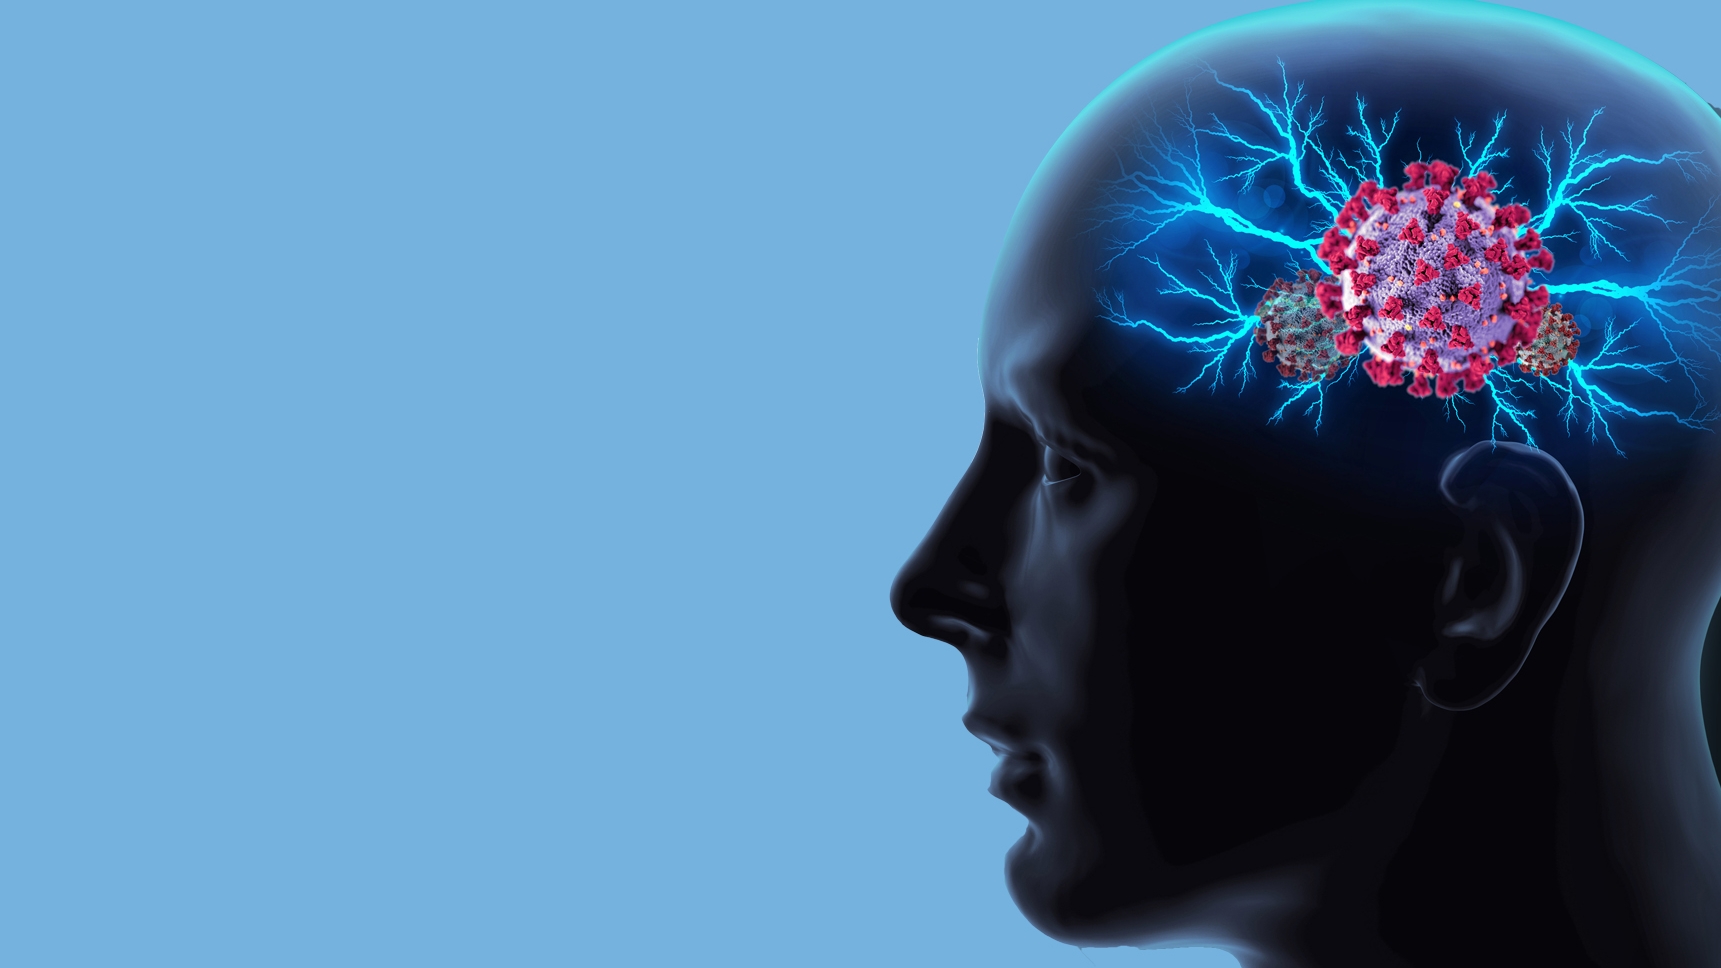 Científicos encontraron que el COVID-19 puede penetrar el cerebro causando daño neurológico de larga duración. Shutterstock